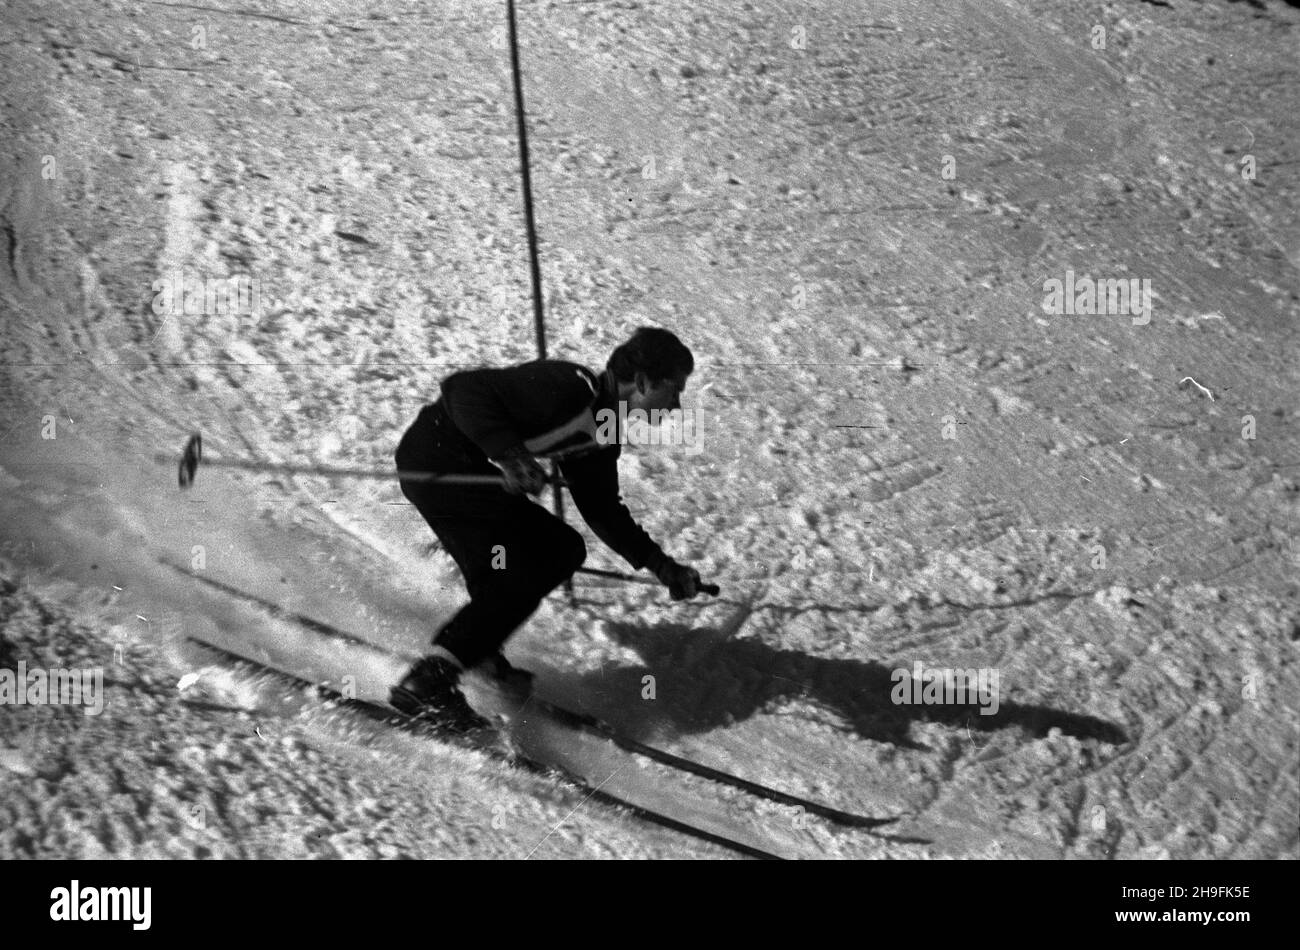 Karpacz, 1948-02-21. W dniach 19-23 lutego odbywa³y siê XXIII Mistrzostwa Narciarskie Polski. Slalom mê¿czyzn wygra³ Józef Marusarz (SNPTT Zakopane). Nz. jeden z zawodników slalomu na trasie przejazdu. pw  PAP    Karpacz, Feb. 21, 1948. The 23rd Poland's Skiing Championship was held on February 19-23. Jozef Marusarz (SNPTT Zakopane) won men's slalom. Pictured: a slalom   contender.  pw  PAP Stock Photo